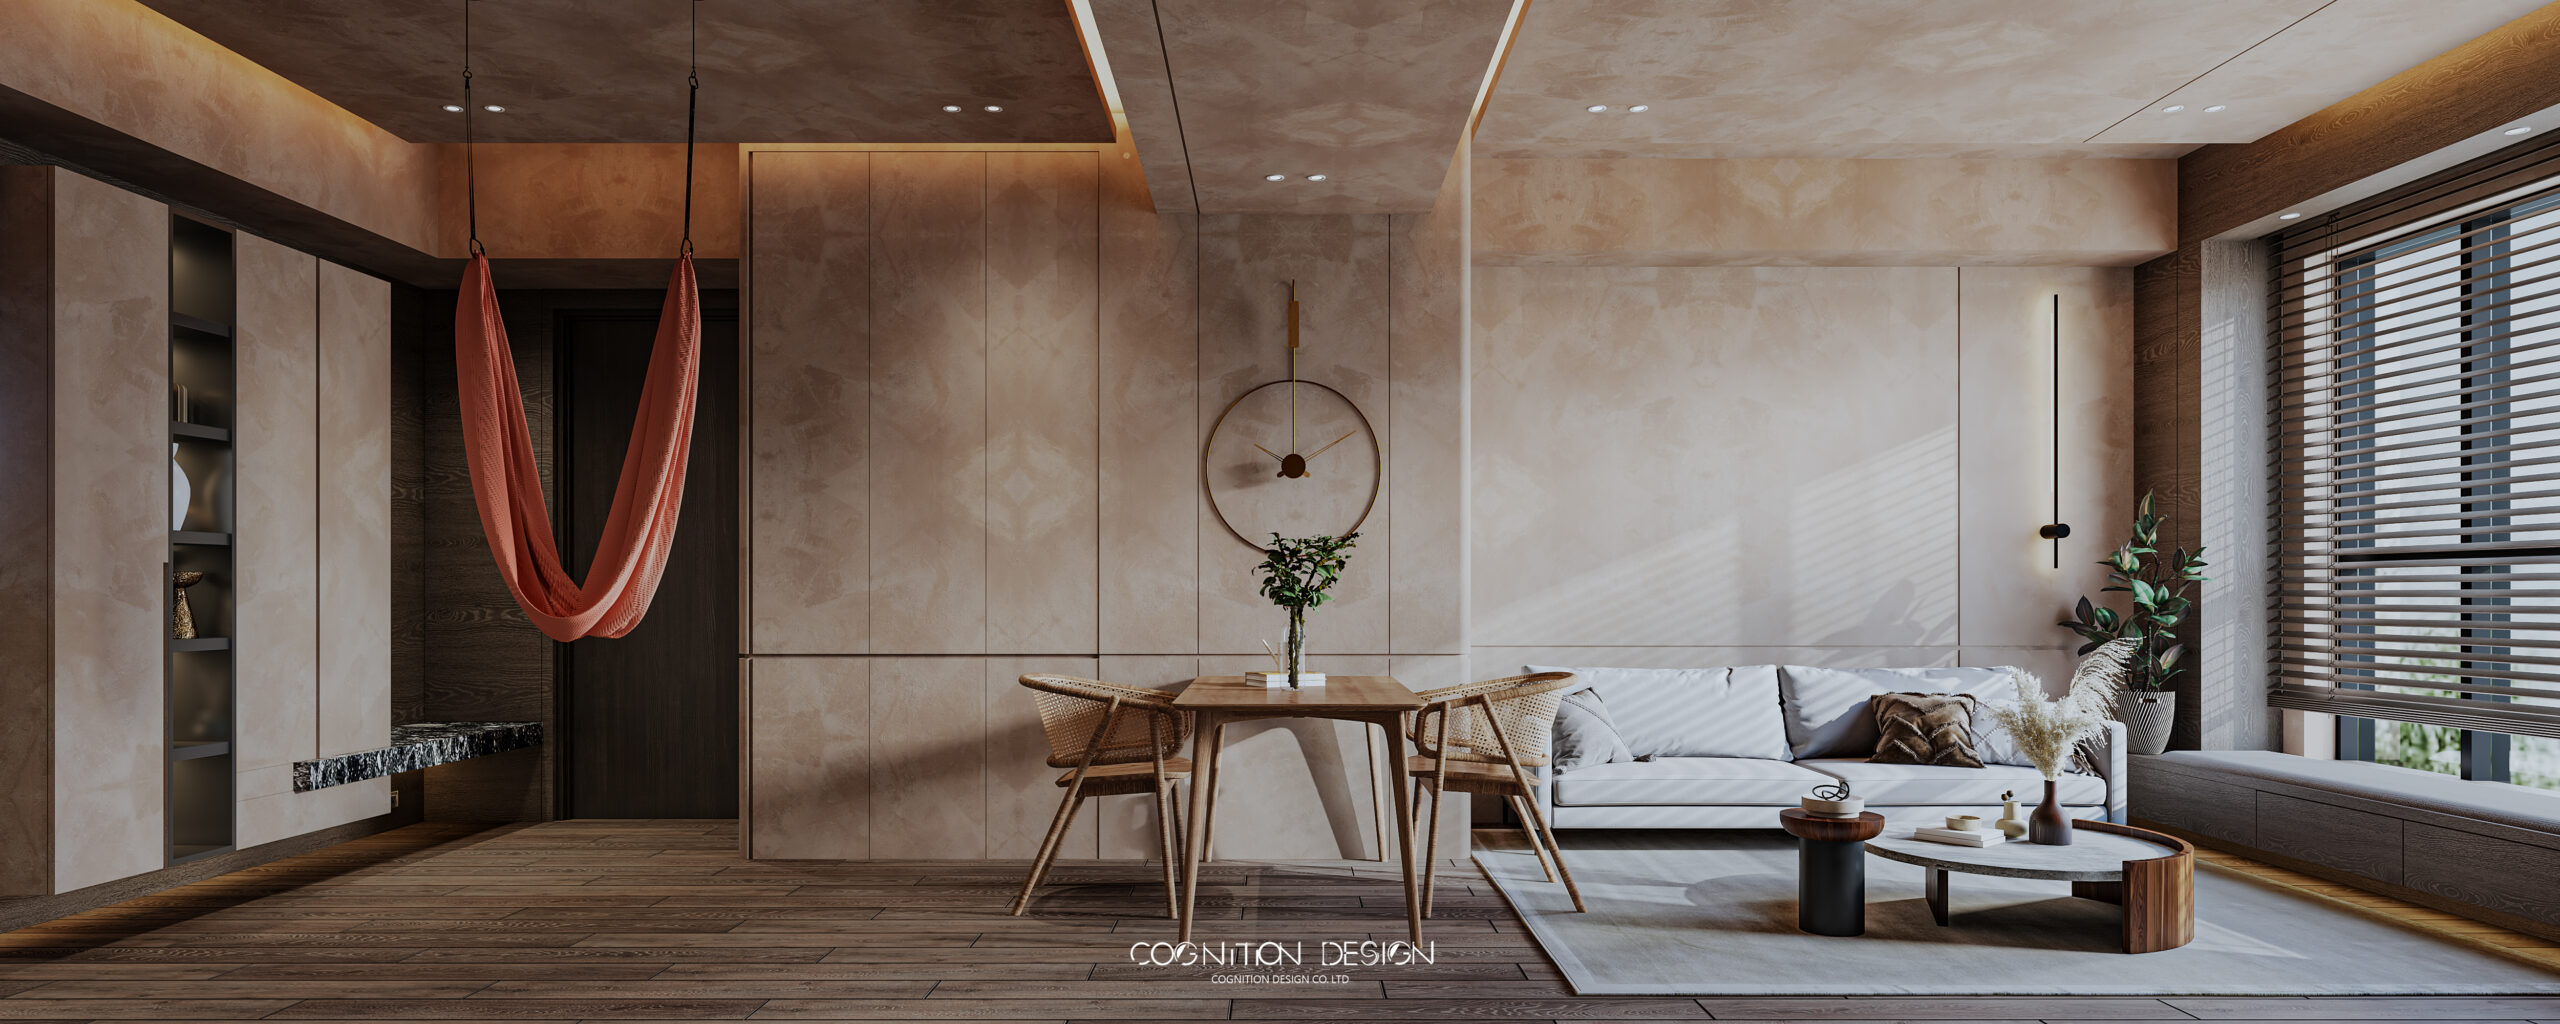 現代日式客廳設計在天花板上增加一組瑜珈繩，打造專屬的居家瑜珈練習空間，適合居家冥想靜心，滿足貴婦名媛在家運動需求